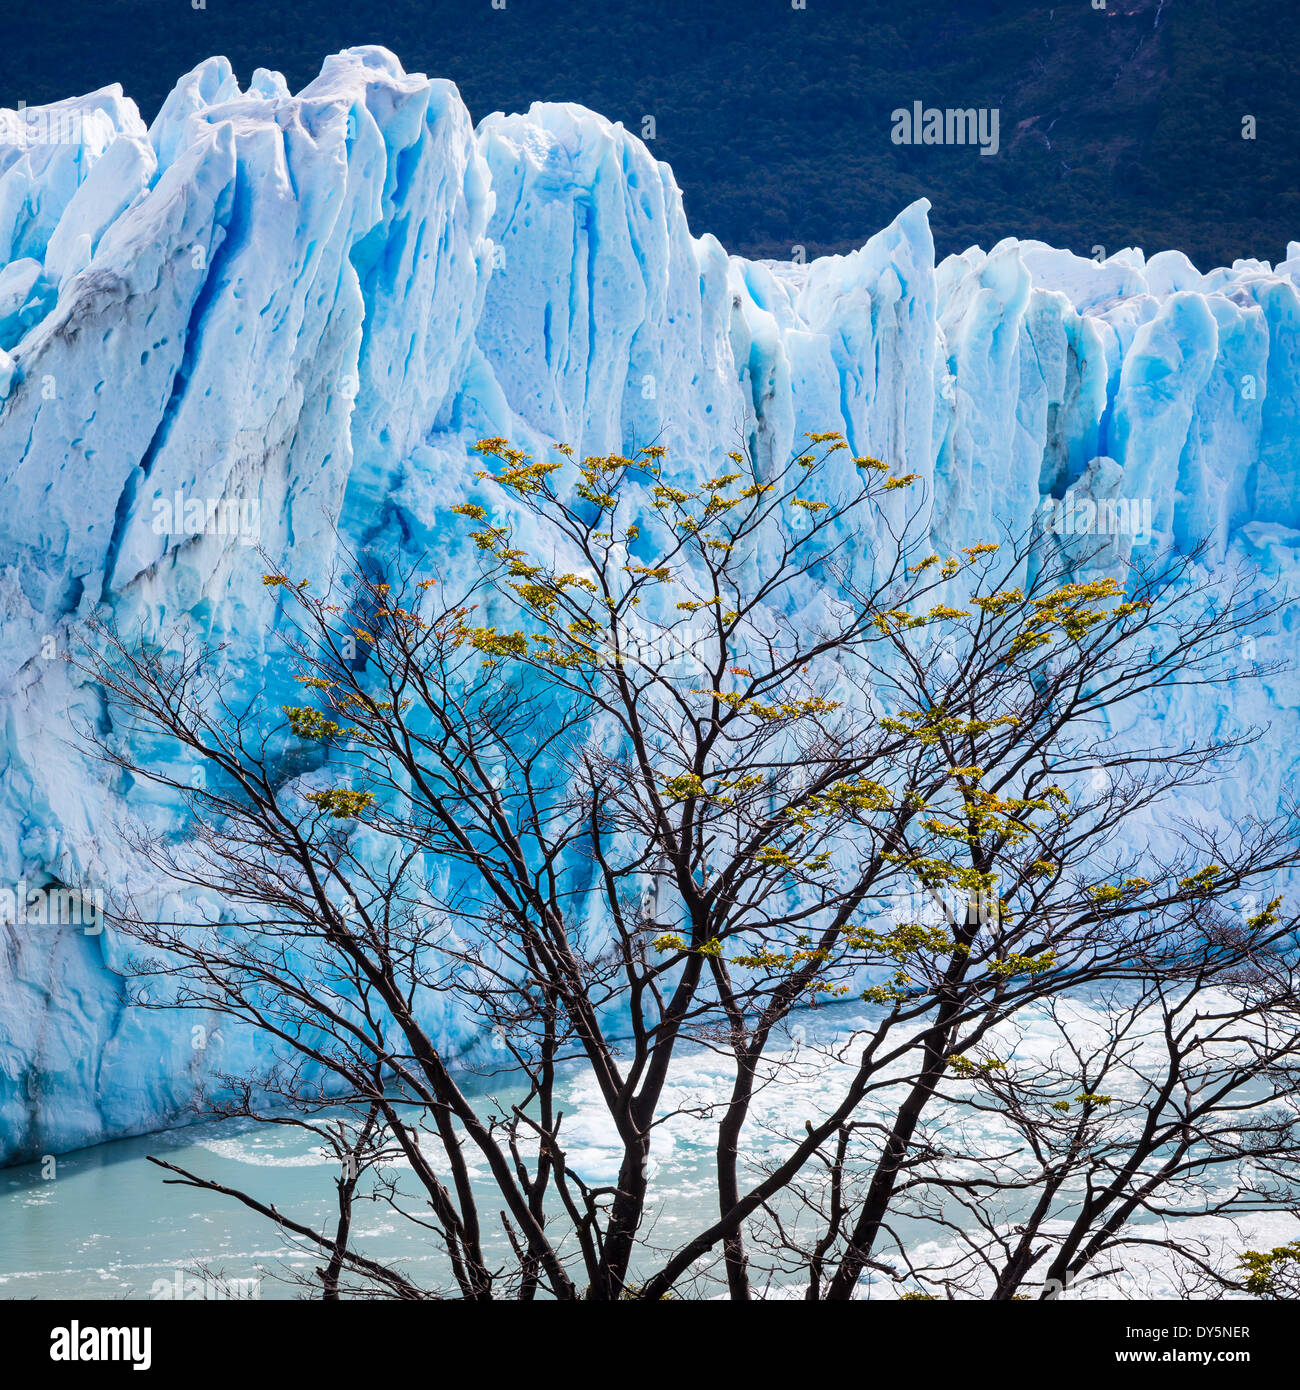 El Glaciar Perito Moreno es un glaciar ubicado en el Parque Nacional Los Glaciares, en el sudoeste de la provincia de Santa Cruz, Argentina. Foto de stock